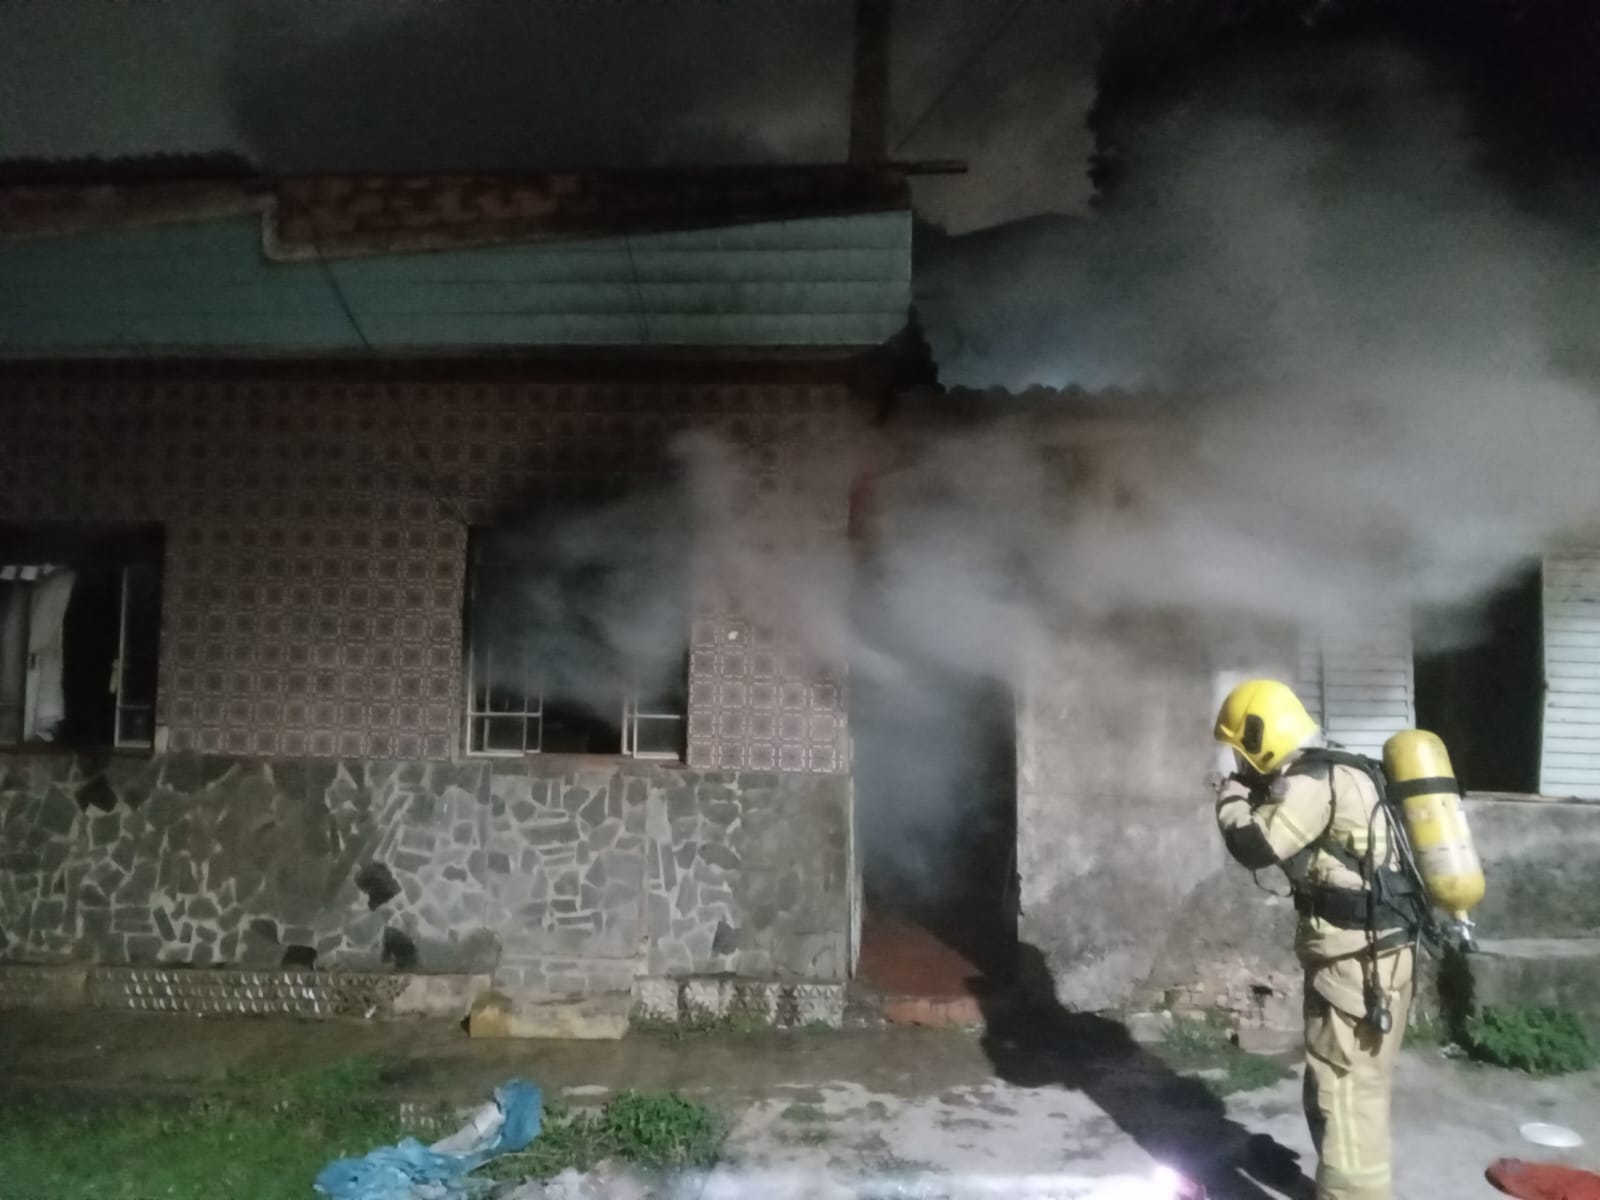 Vela acesa pode ter causado incêndio em residência no bairro São Geraldo em Lafaiete.